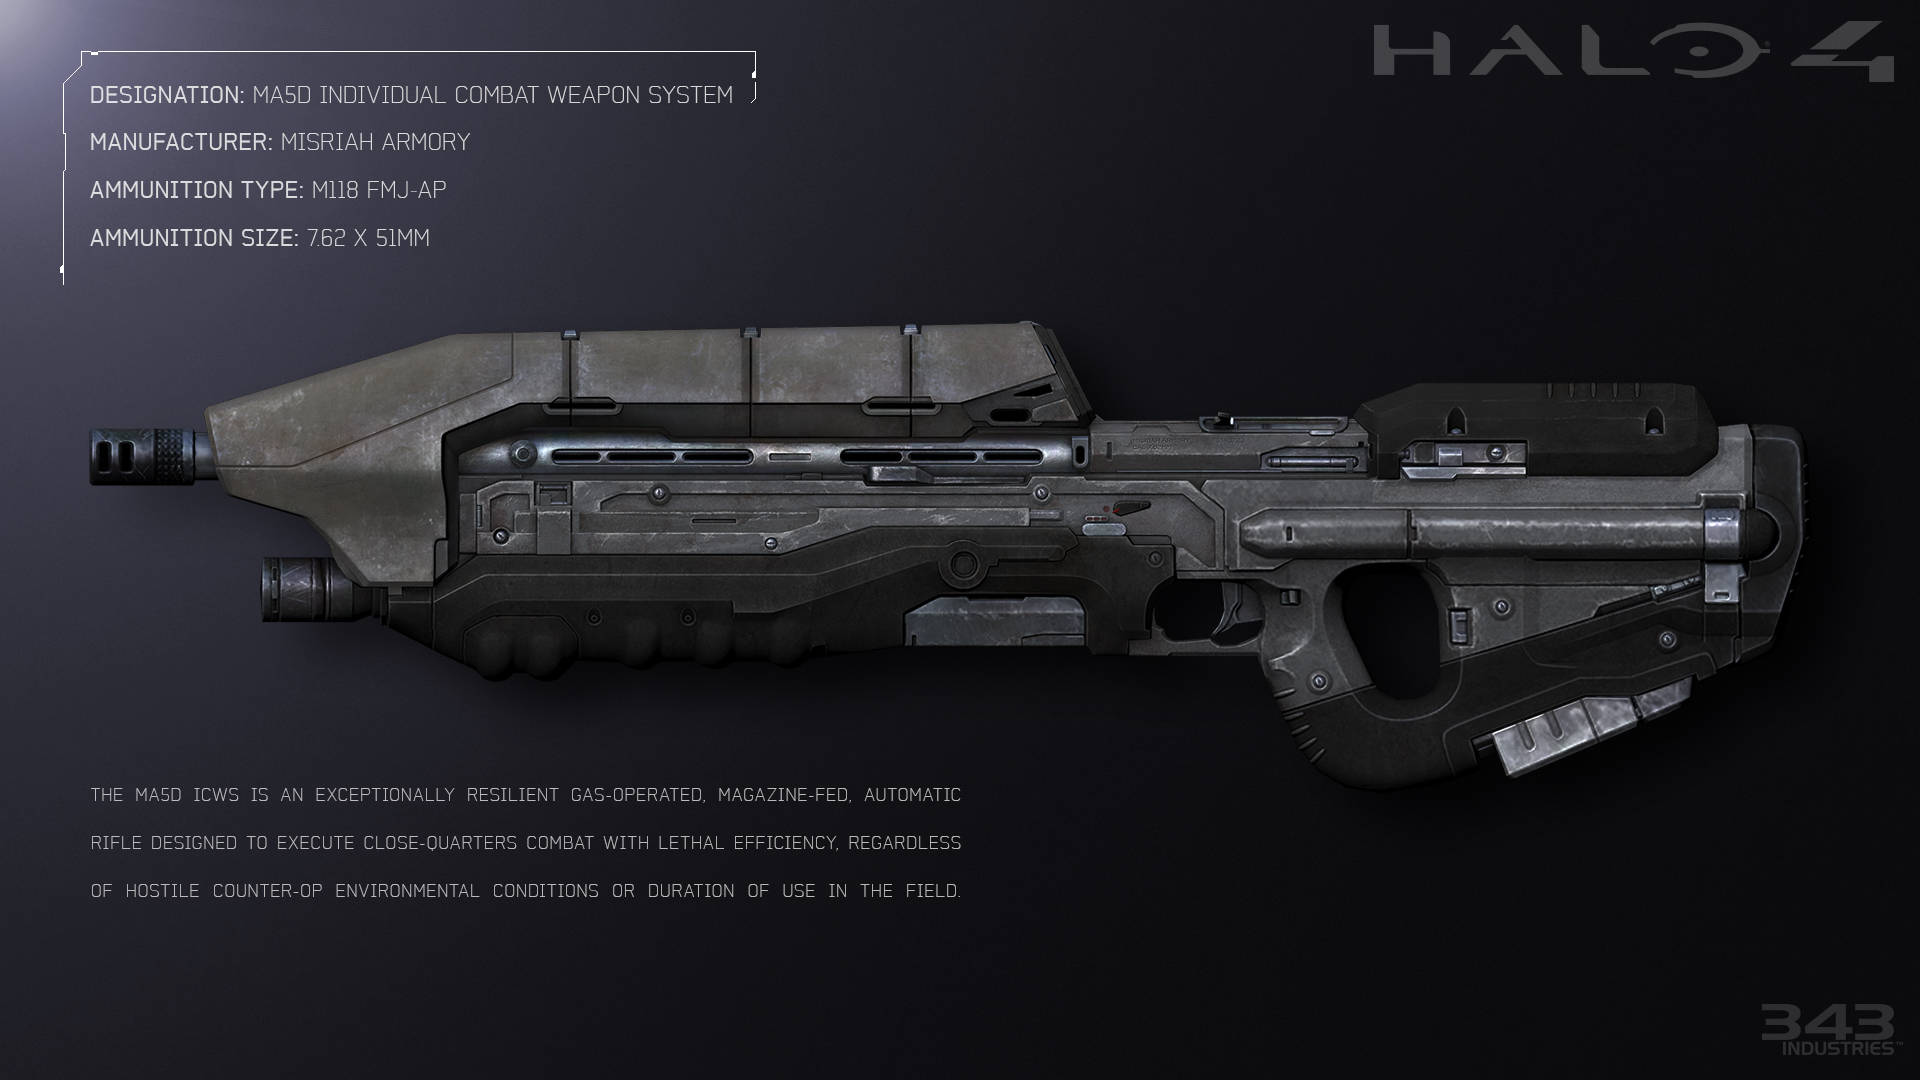 Halo 4 Unsc Assault Rifle Wallpaper